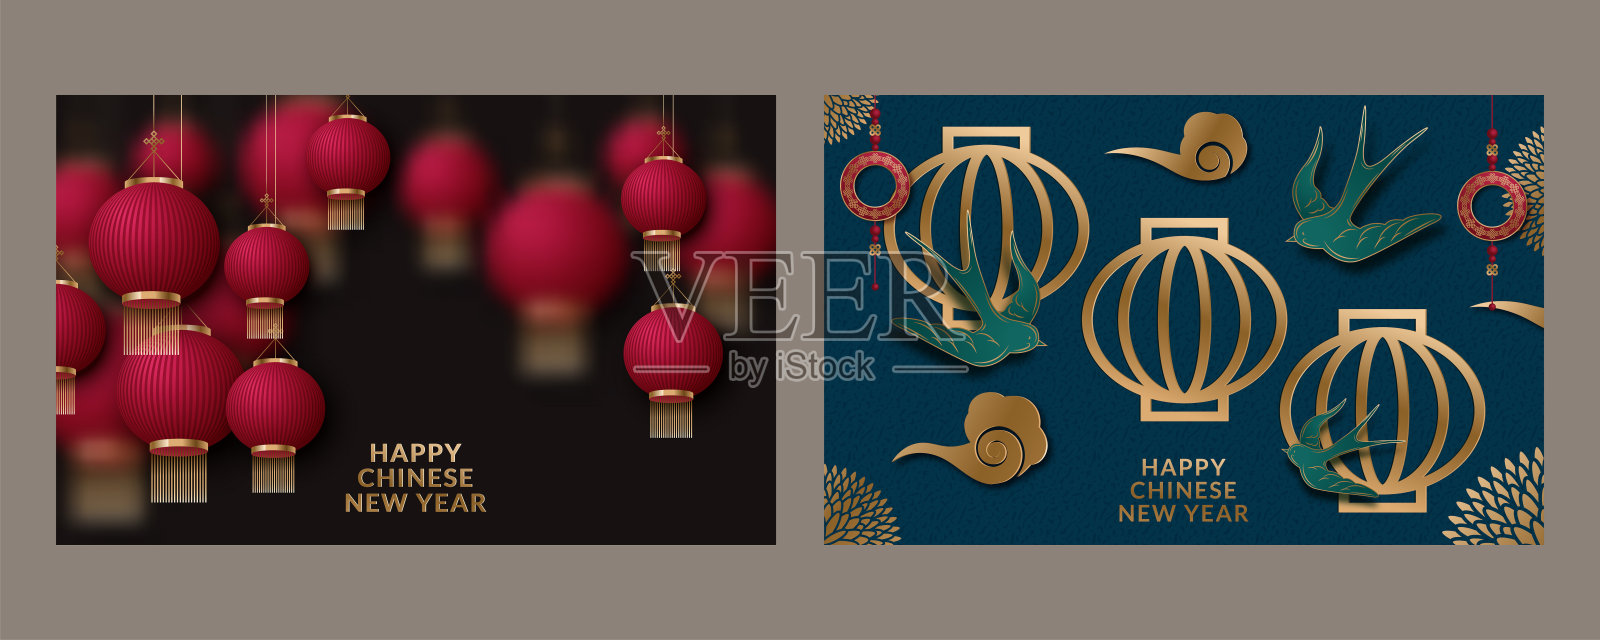 以2020年中国新年为背景的系列海报。翻译:新年快乐。矢量图插画图片素材